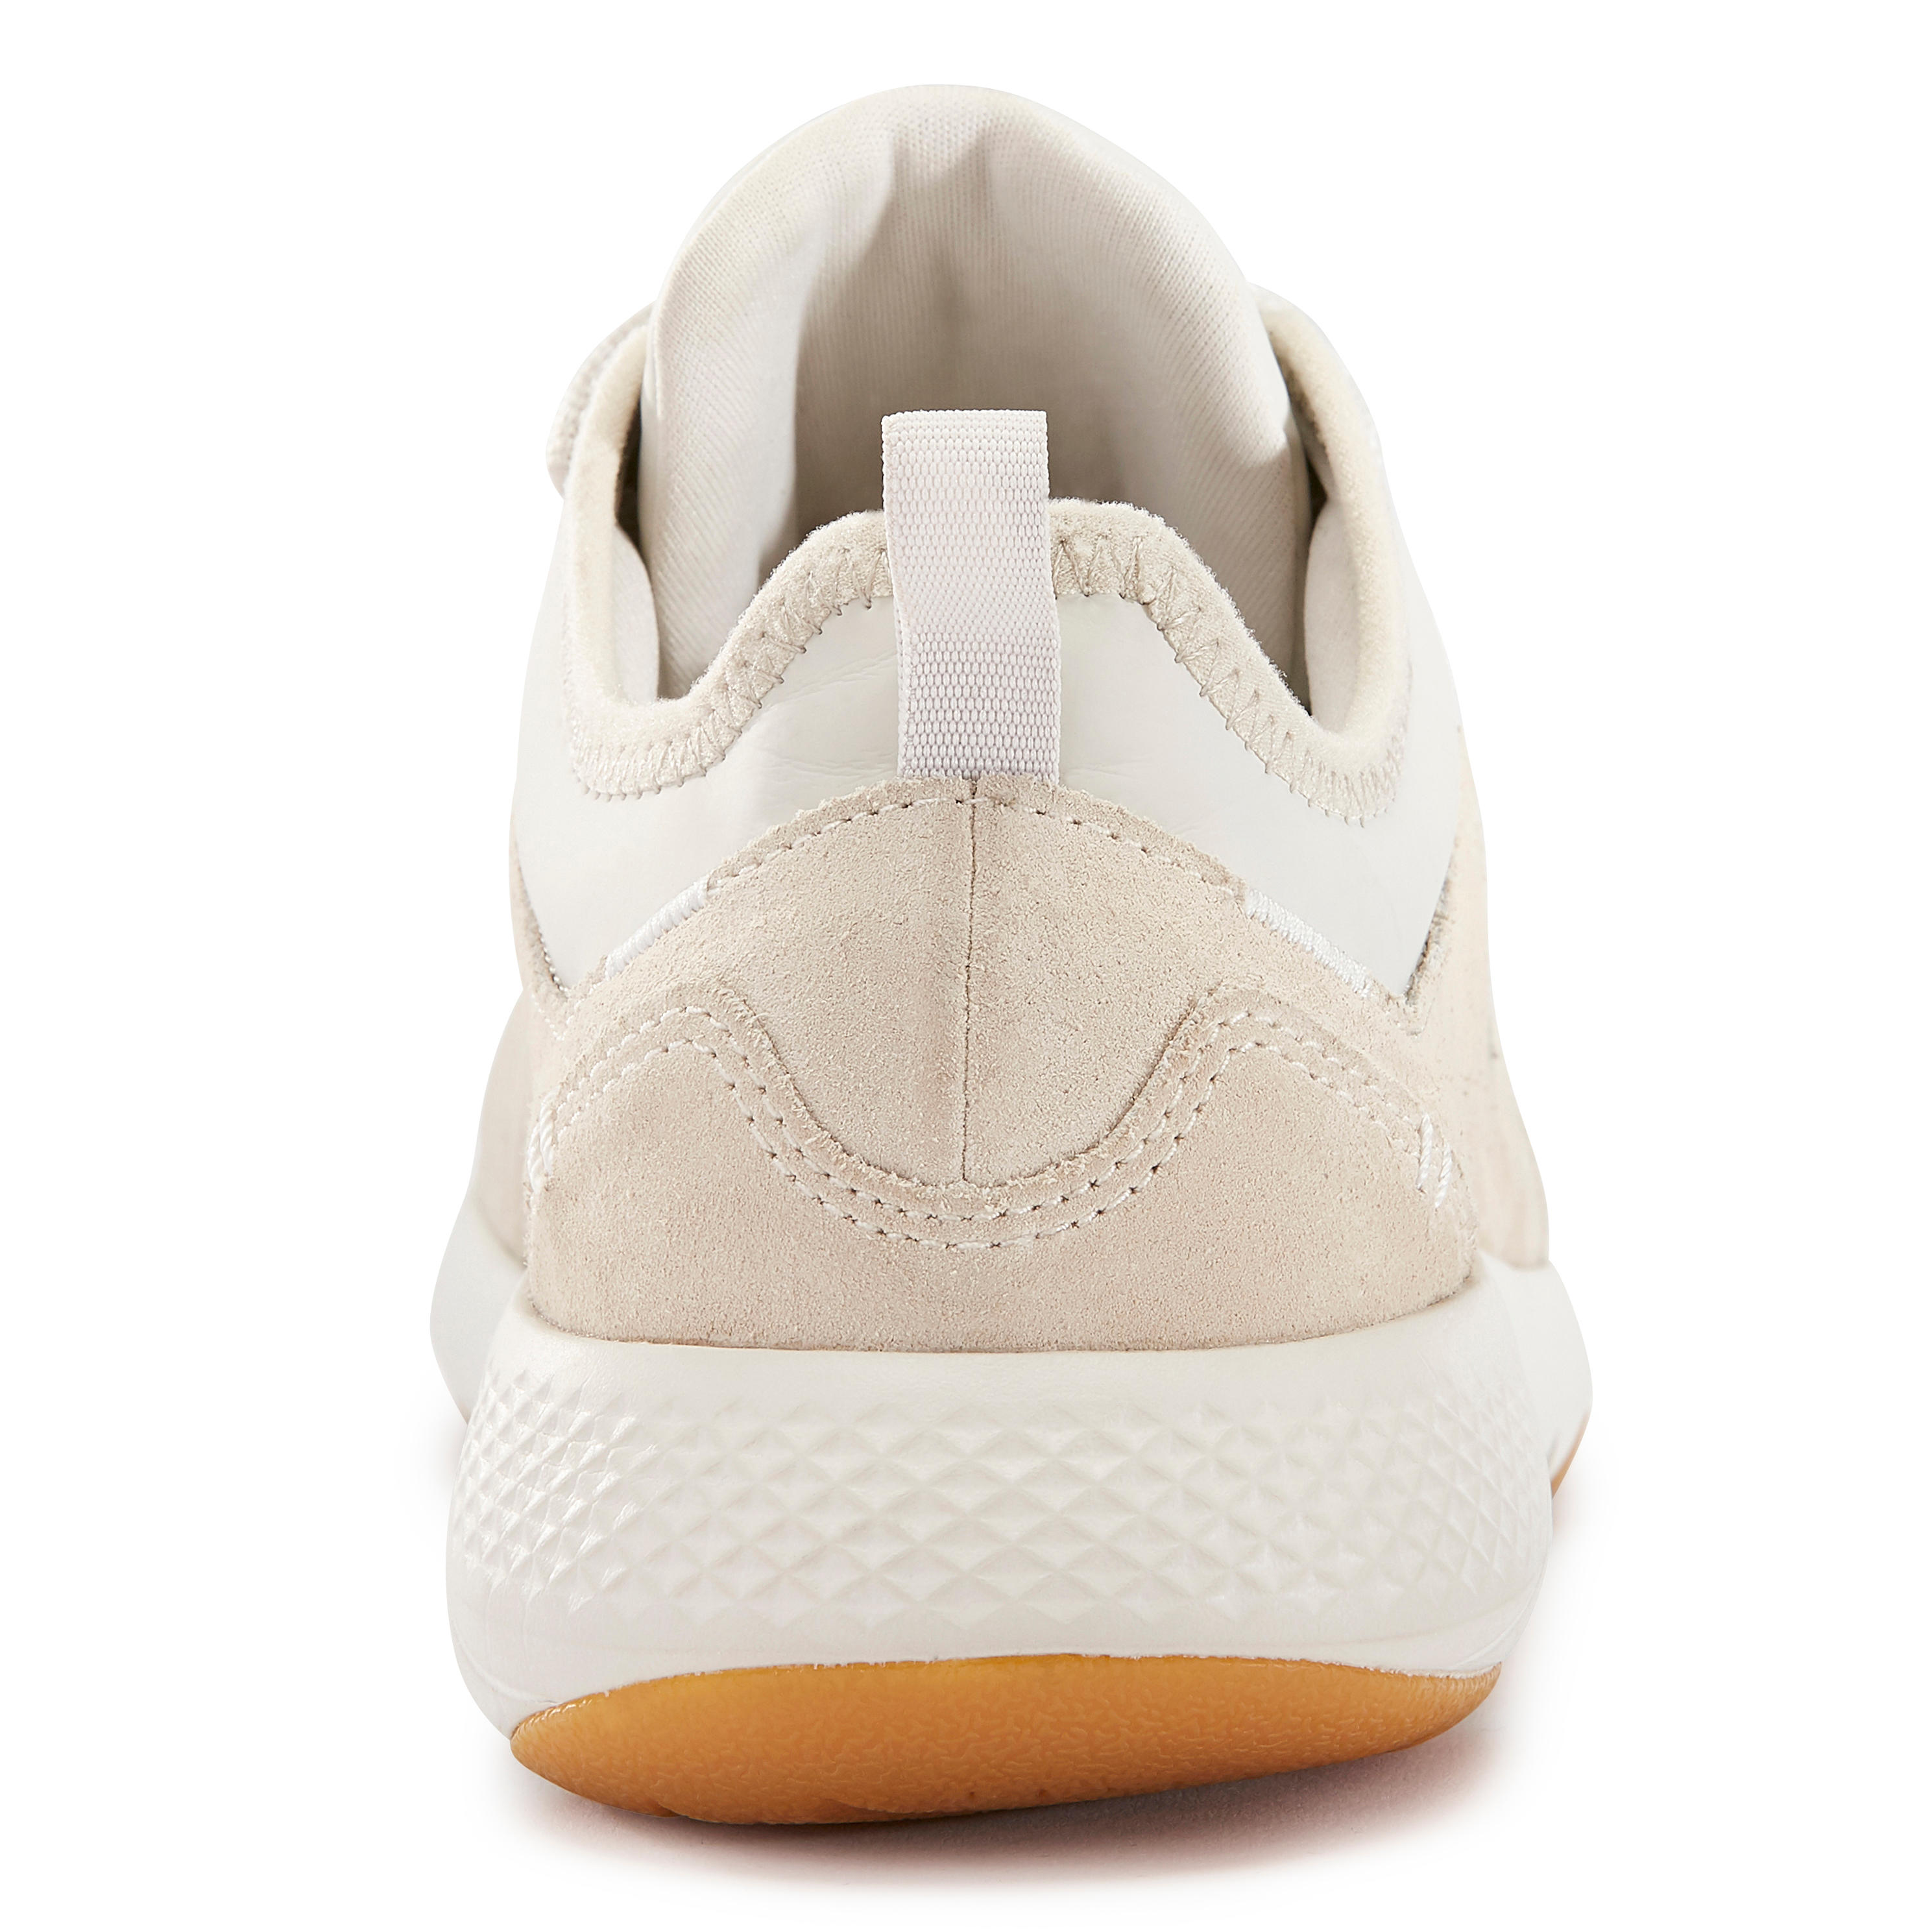 Women's City Walking Shoes Actiwalk Comfort Leather - beige 28/35